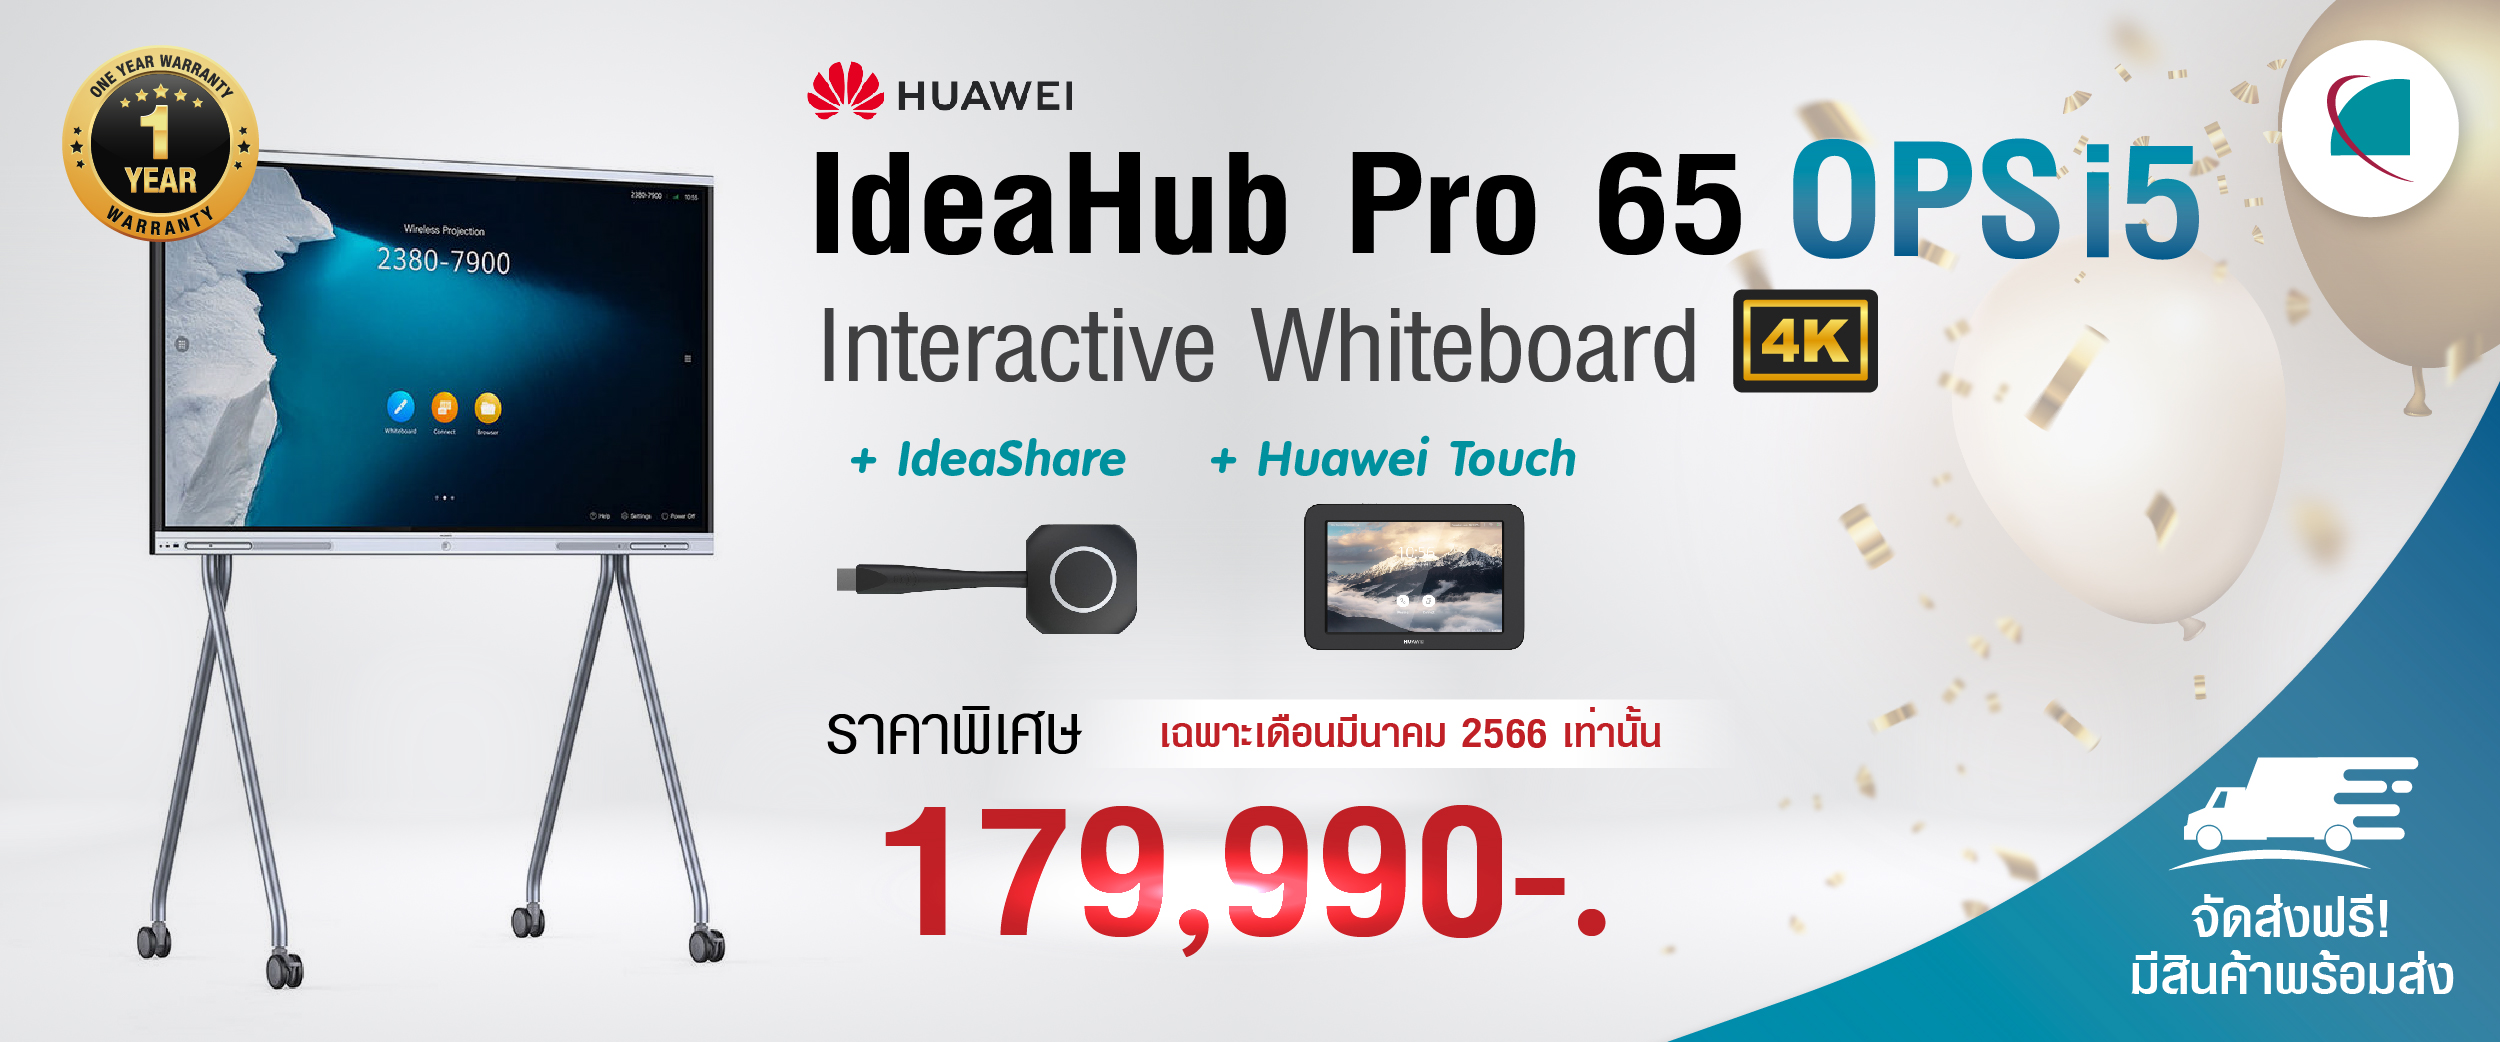 Huawei Ideahub Pro 65 i5